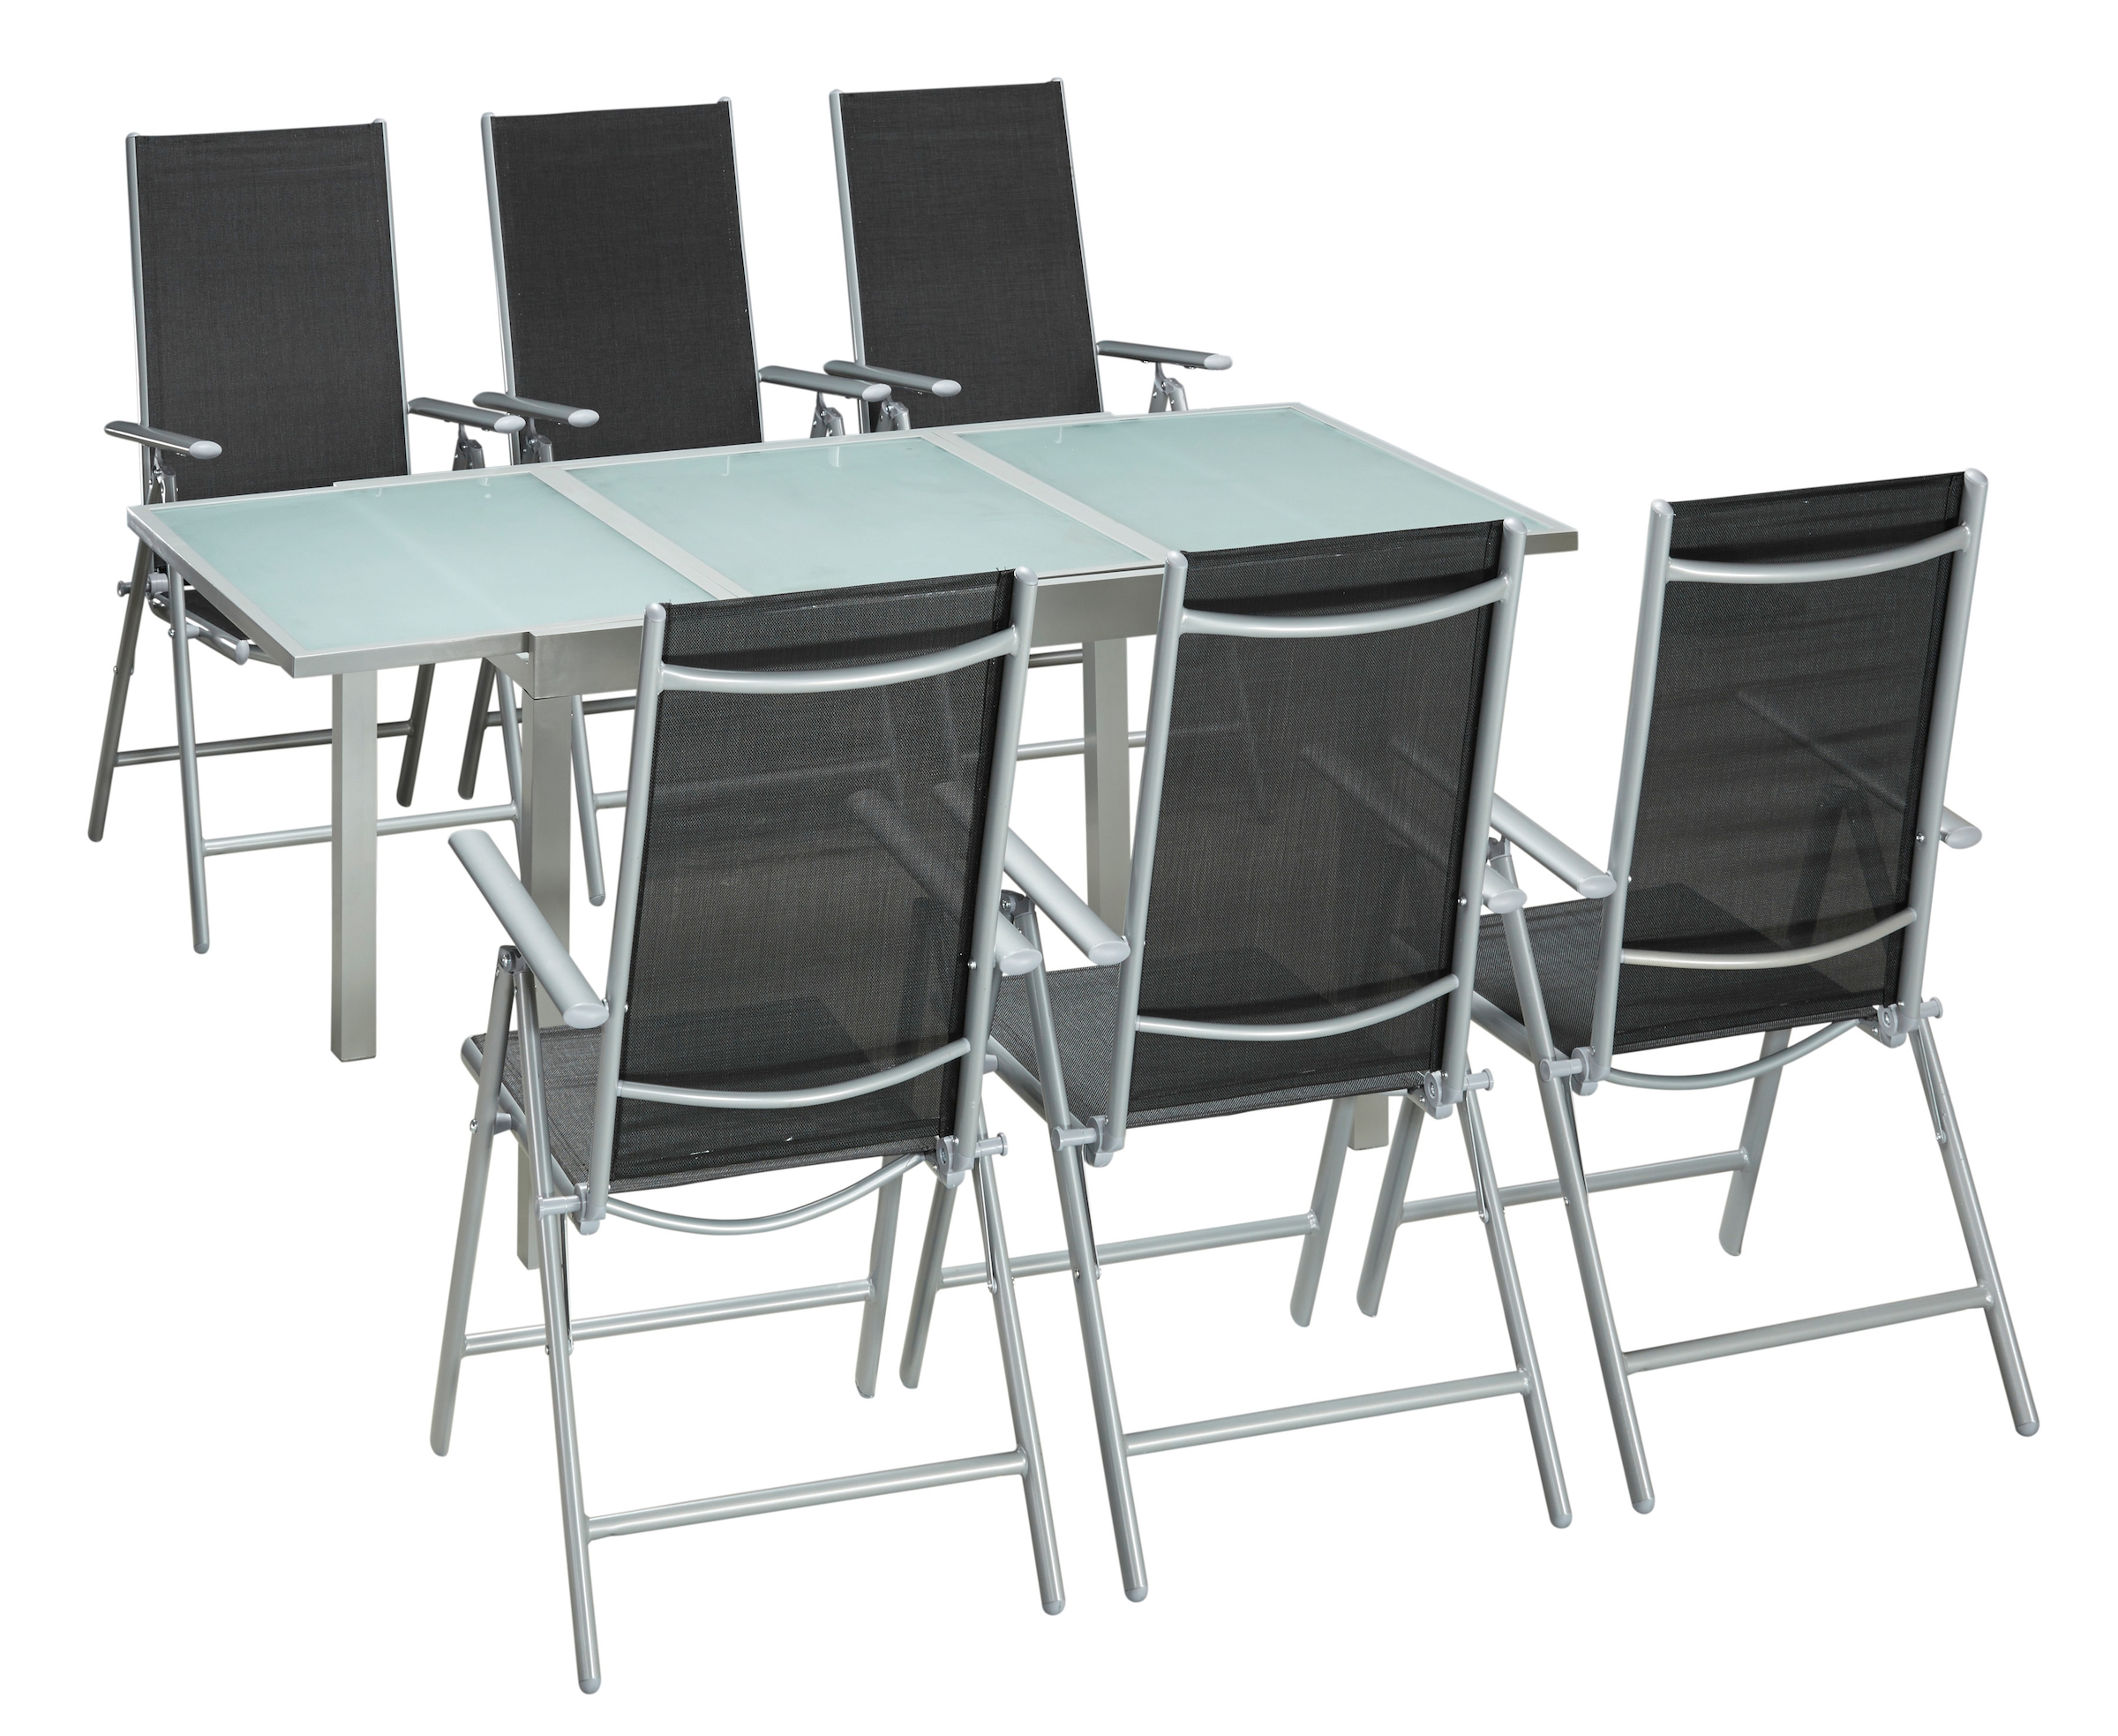 MERXX Garten-Essgruppe »Lima«, (Set, 7 tlg.), inkl. 6 Sesseln und ausziehbarem Tisch (120 - 180 cm)